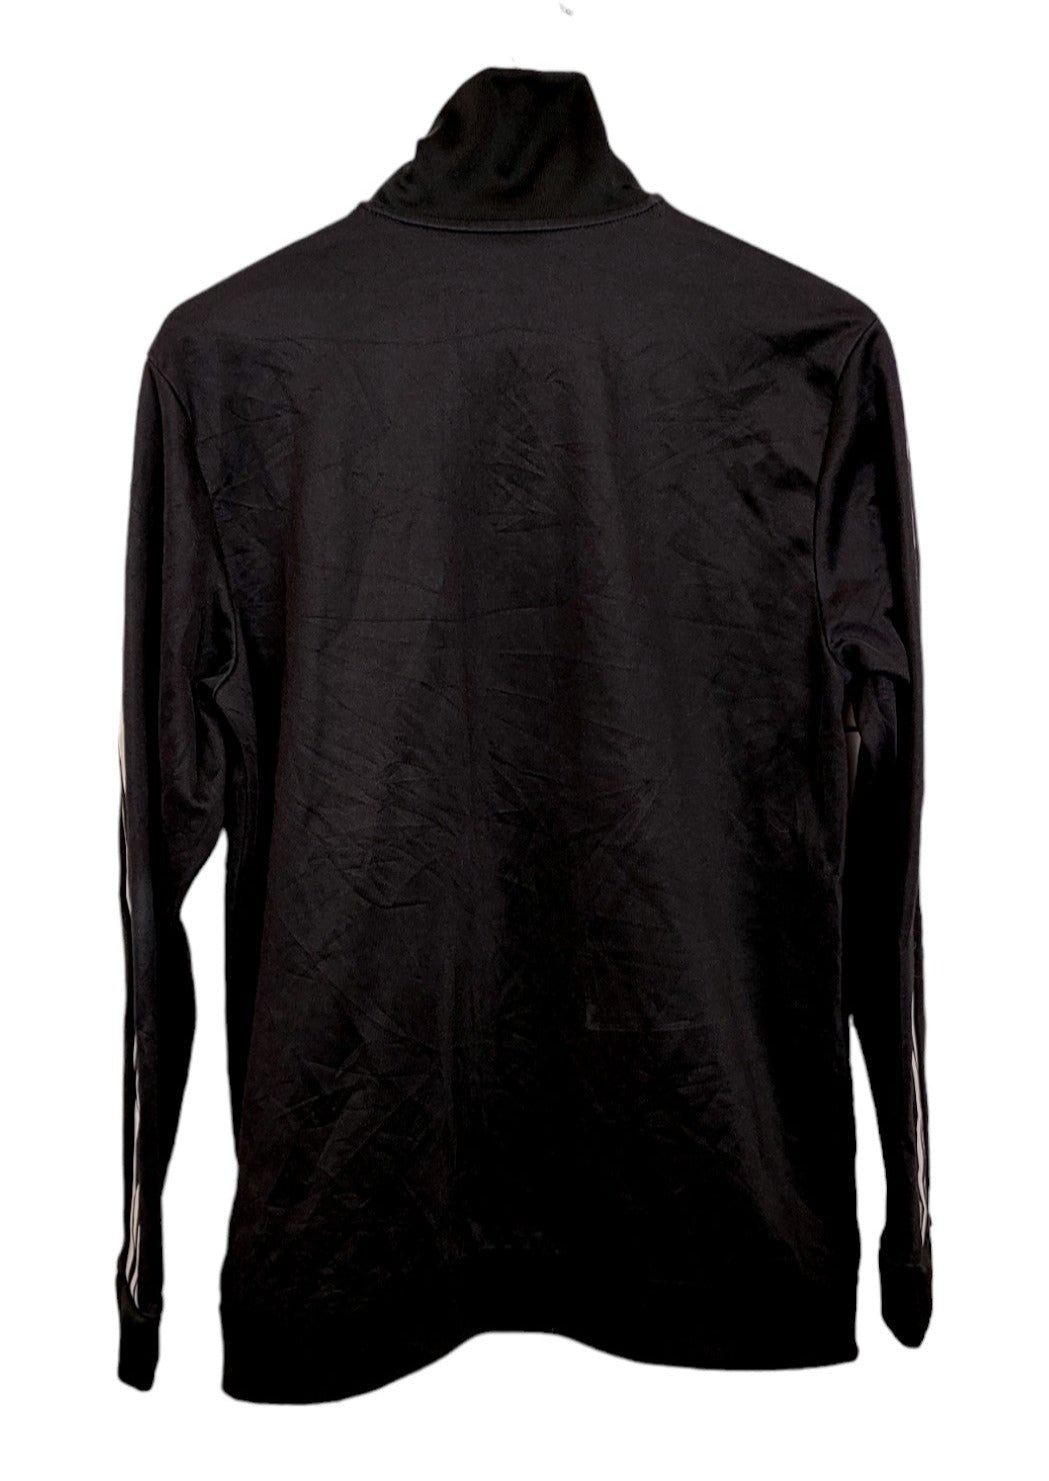 Αθλητική Ανδρική Ζακέτα ADIDAS σε Μαύρο Χρώμα (Medium)